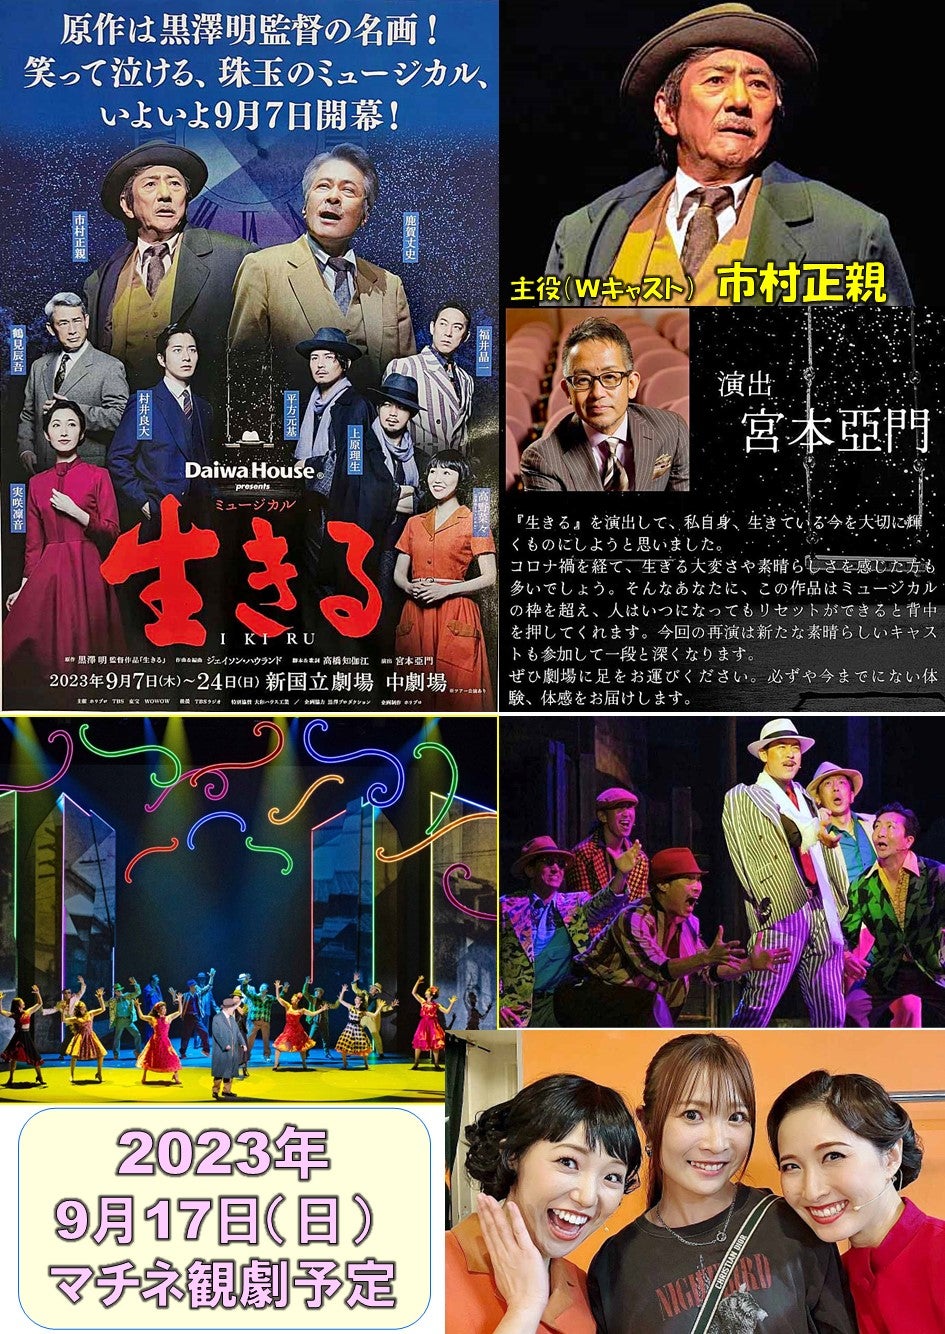 黒澤明監督映画原作『生きる』のミュージカル版『生きる』9月7日開幕